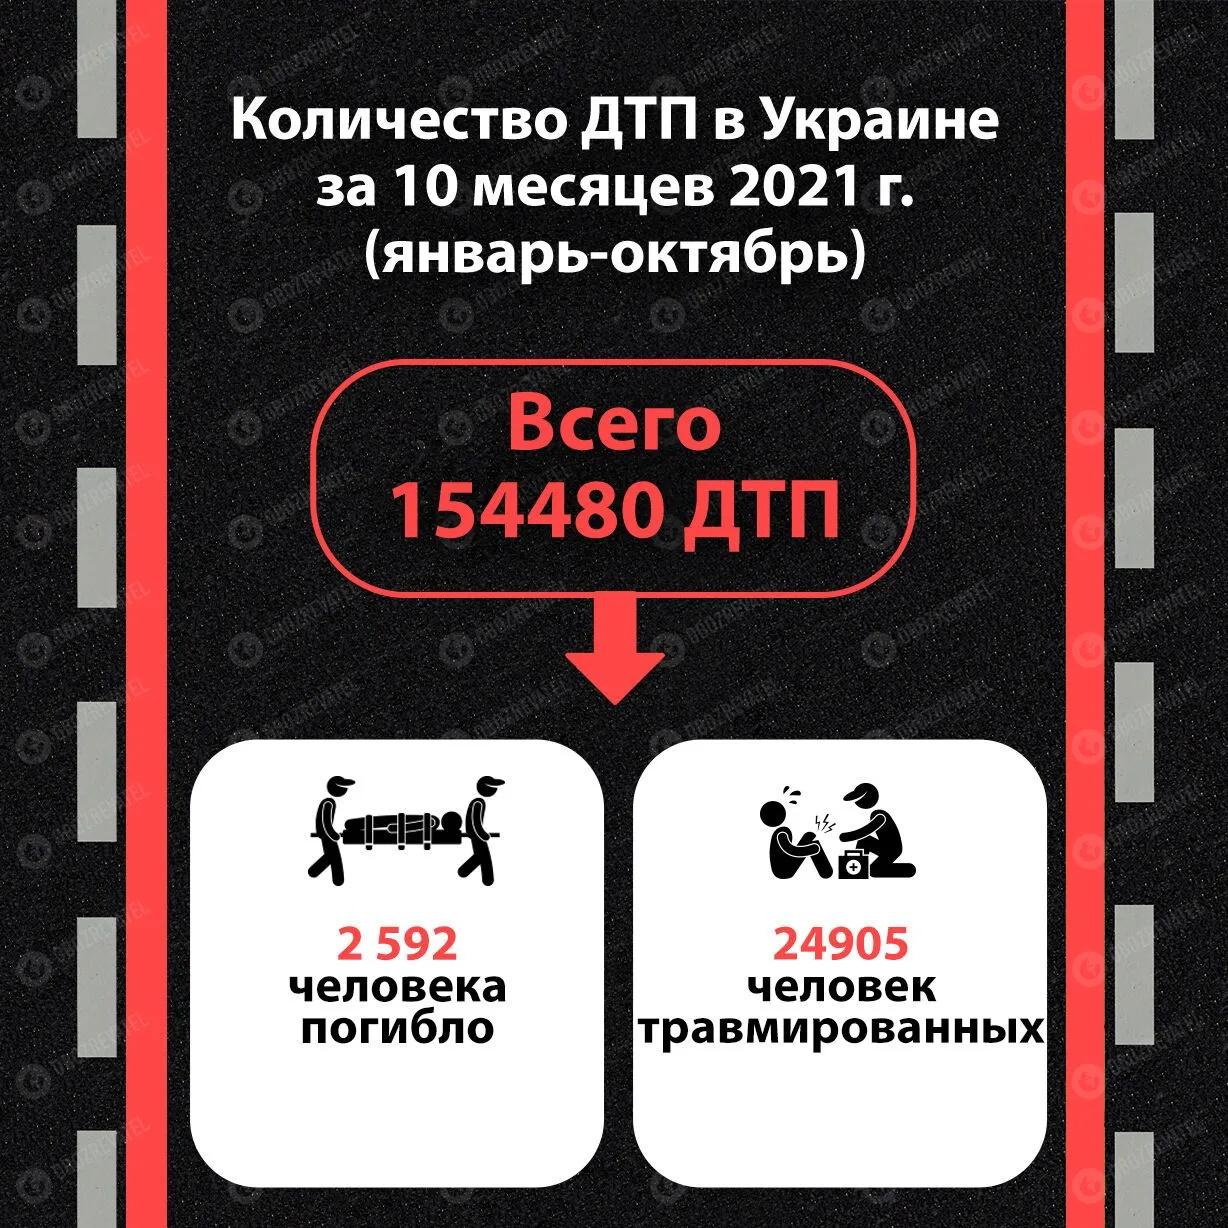 Статистика ДТП в Україні за 10 місяців 2021 року